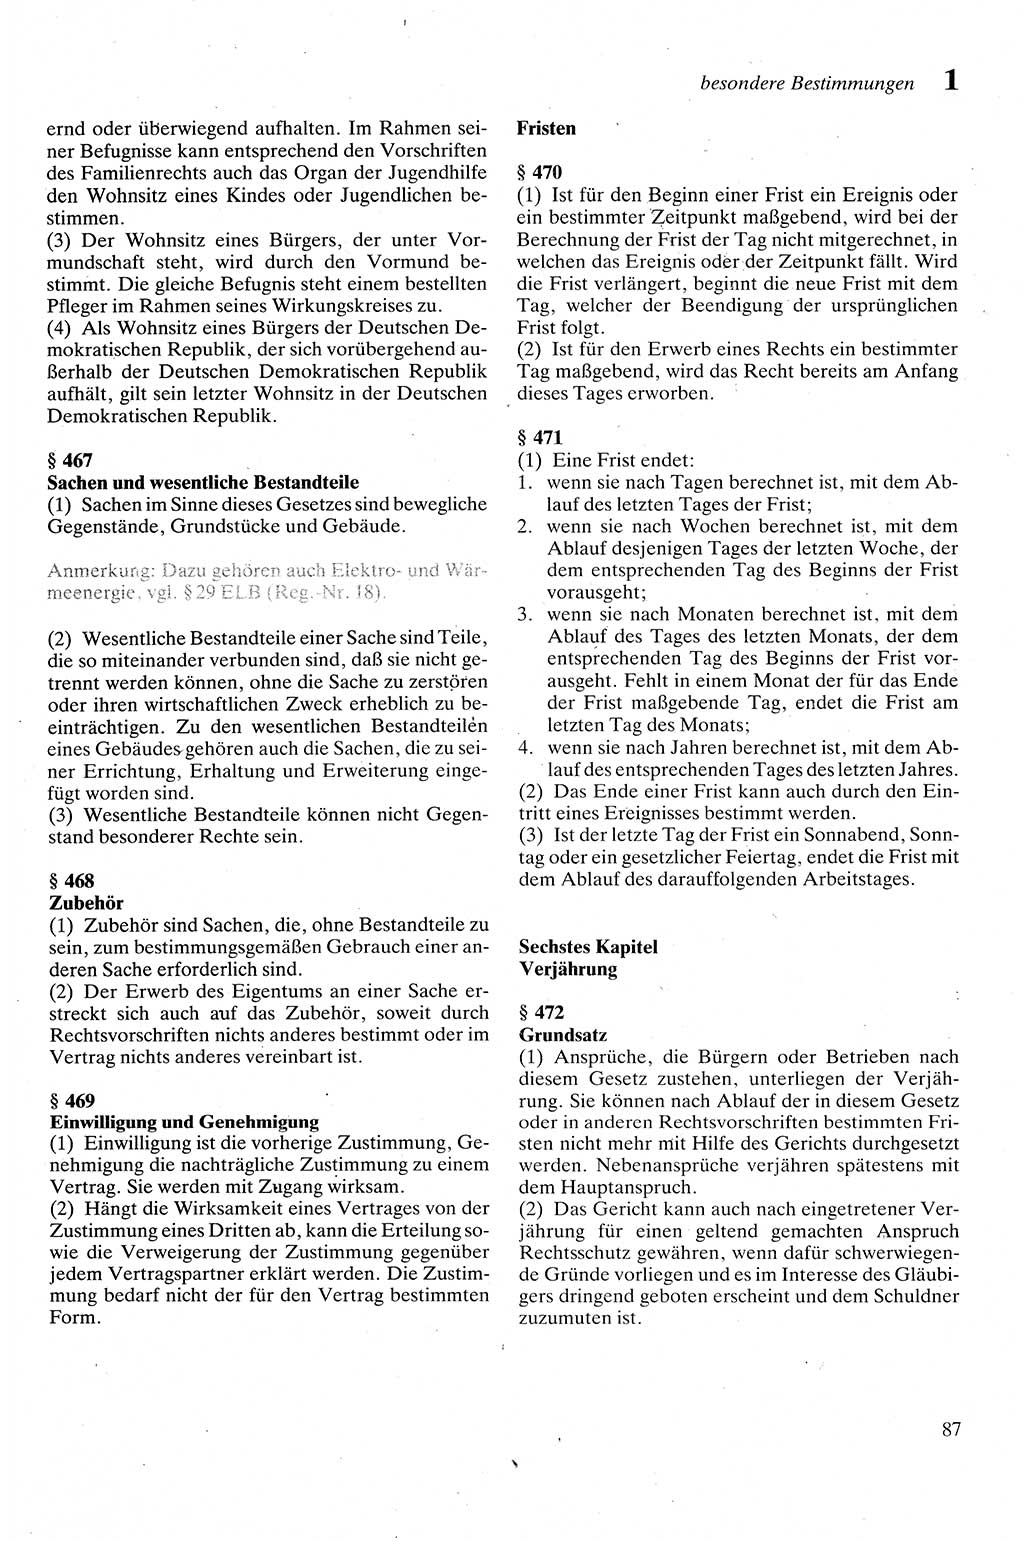 Zivilgesetzbuch (ZVG) sowie angrenzende Gesetze und Bestimmungen [Deutsche Demokratische Republik (DDR)] 1975, Seite 87 (ZGB Ges. Best. DDR 1975, S. 87)